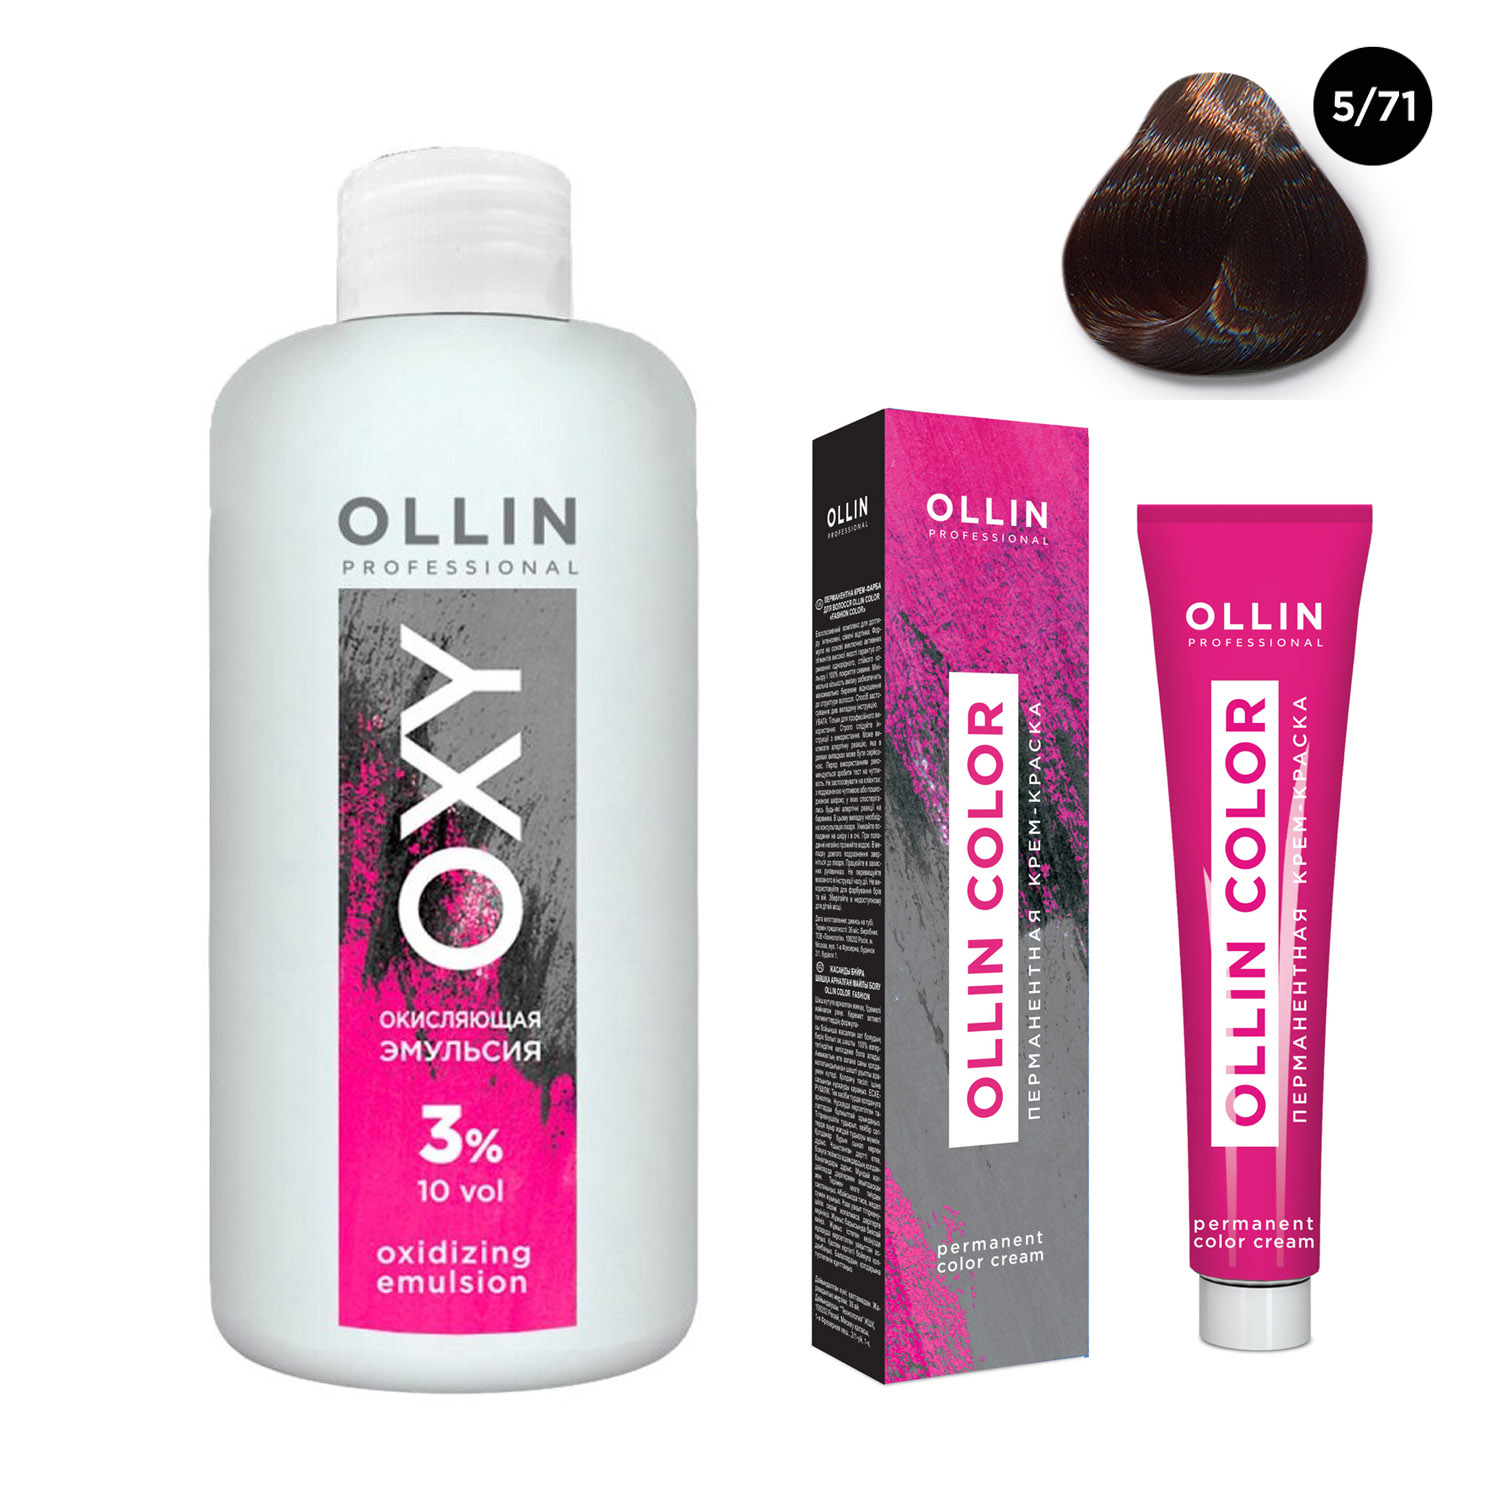 Ollin Professional Набор Перманентная крем-краска для волос Ollin Color оттенок 5/71 светлый шатен коричнево-пепельный 100 мл + Окисляющая эмульсия Oxy 3% 150 мл (Ollin Professional, Ollin Color)